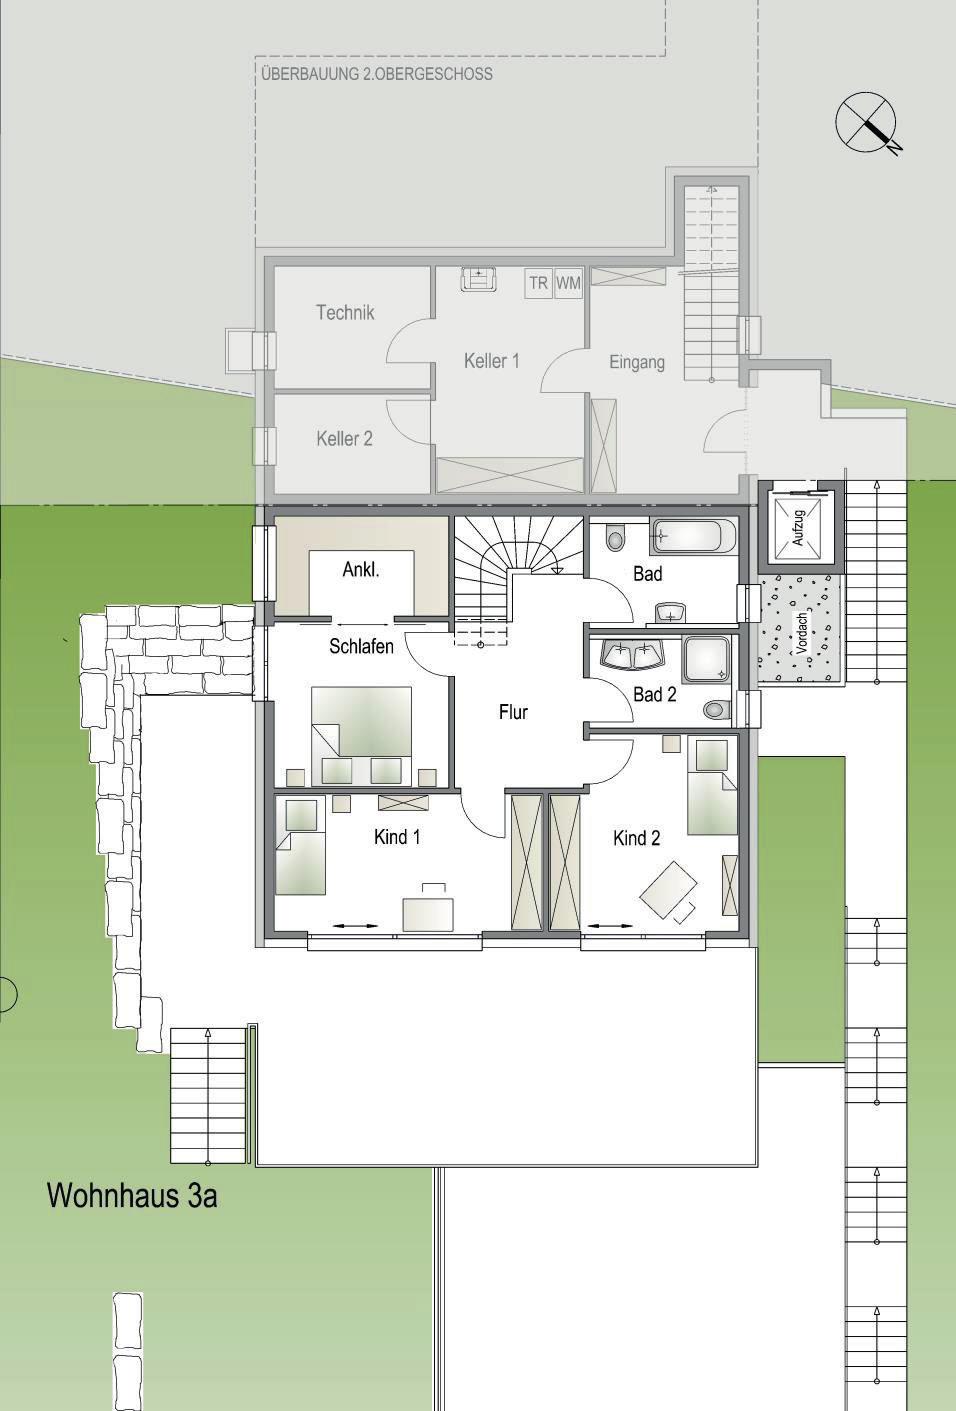 0 m 1 2 3 4 GRUNDRISS Obergeschoss Massstab 1:100 7.00 m² 6.